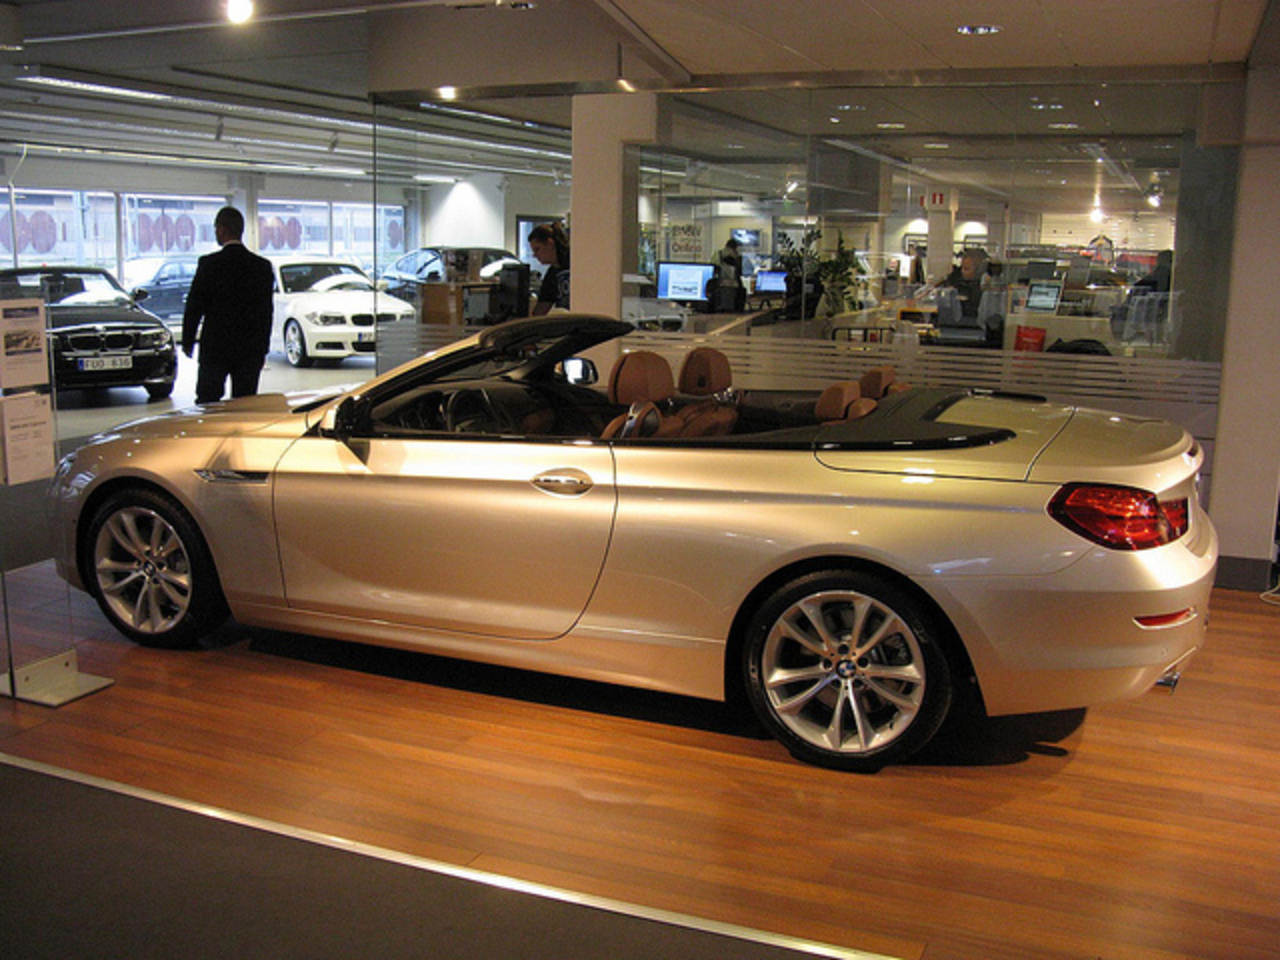 Flickr: The BMW Cabrio Pool